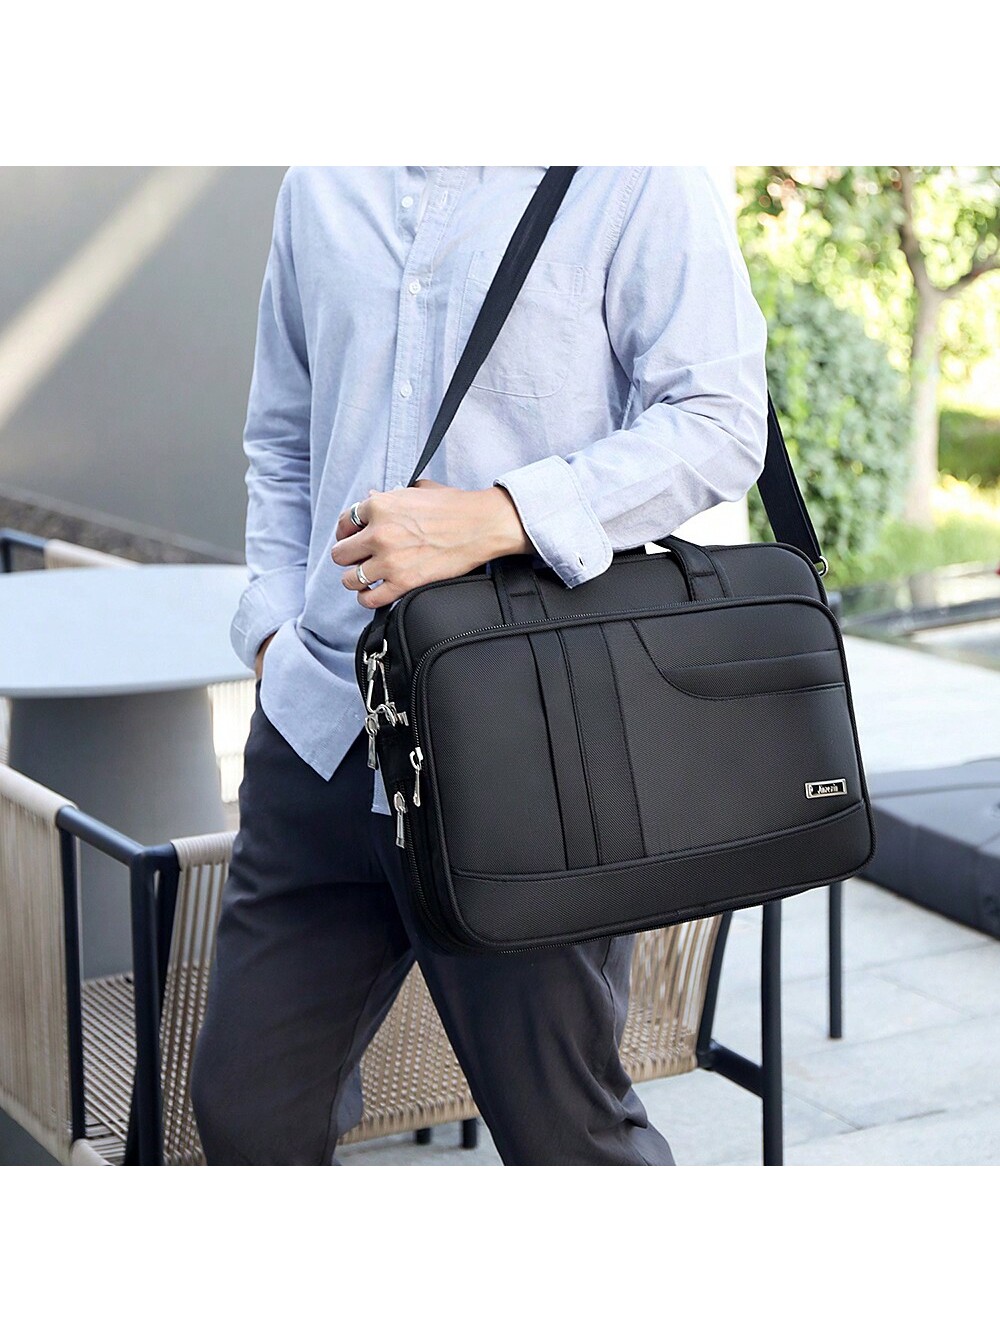 1шт 16-дюймовый компьютерный портфель для мужчин, черный 2223681 пуленепробиваемый нейлоновый мужской деловой рюкзак сумка для компьютера